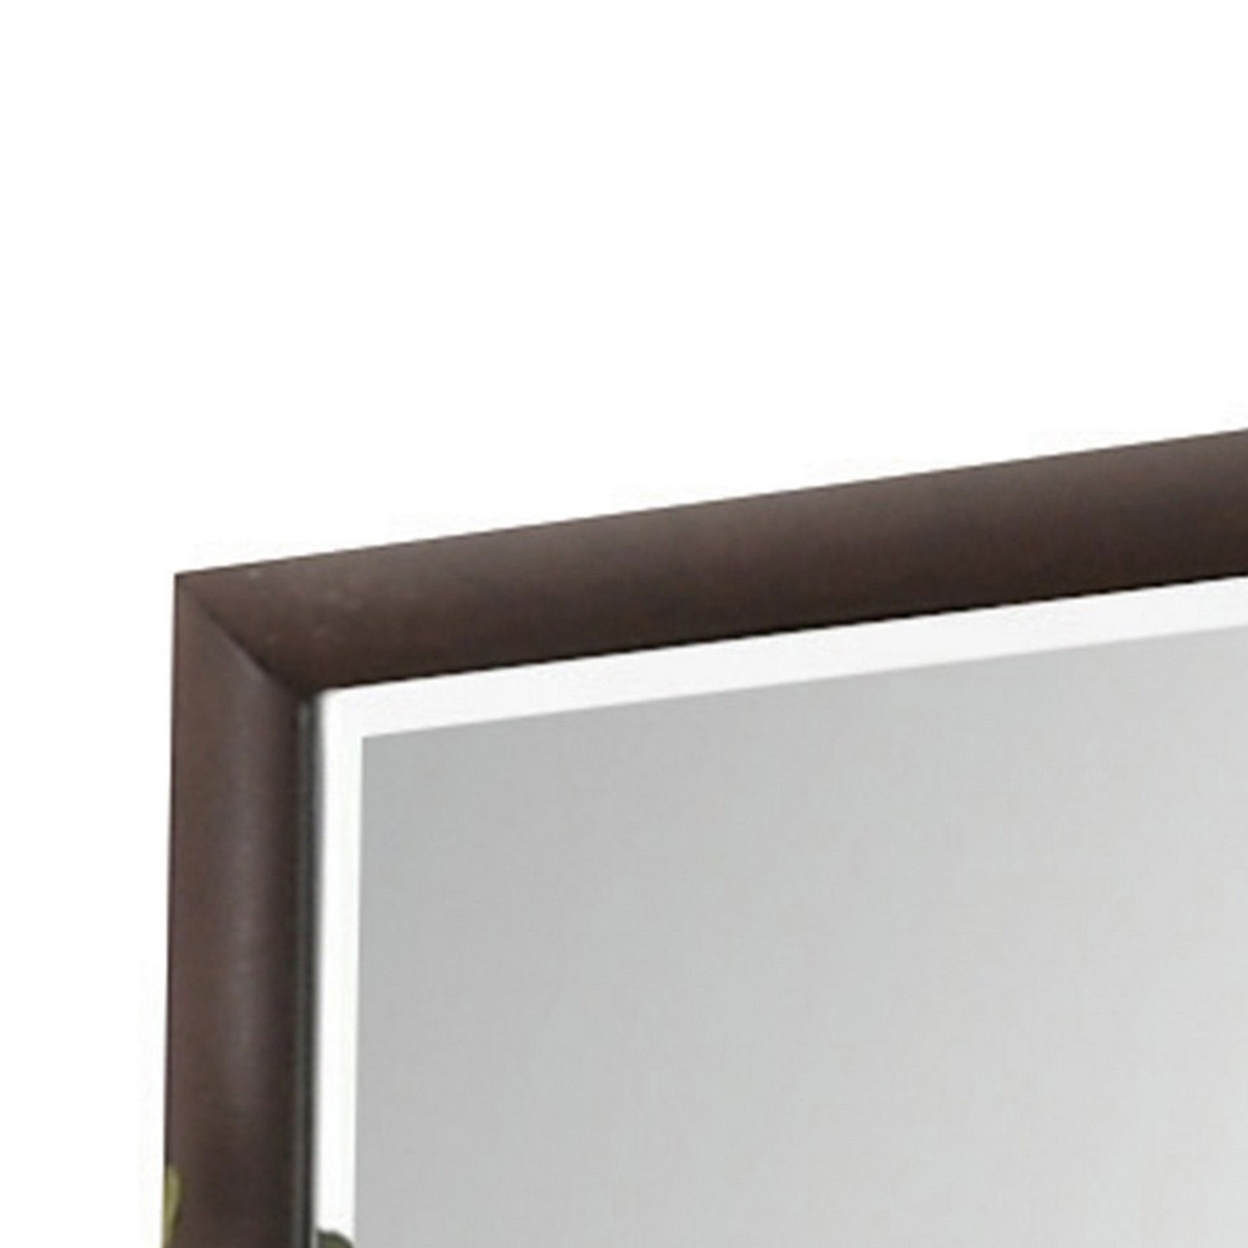 Wooden Rectangular Wall Mirror With Mounting Hardware, Brown- Saltoro Sherpi